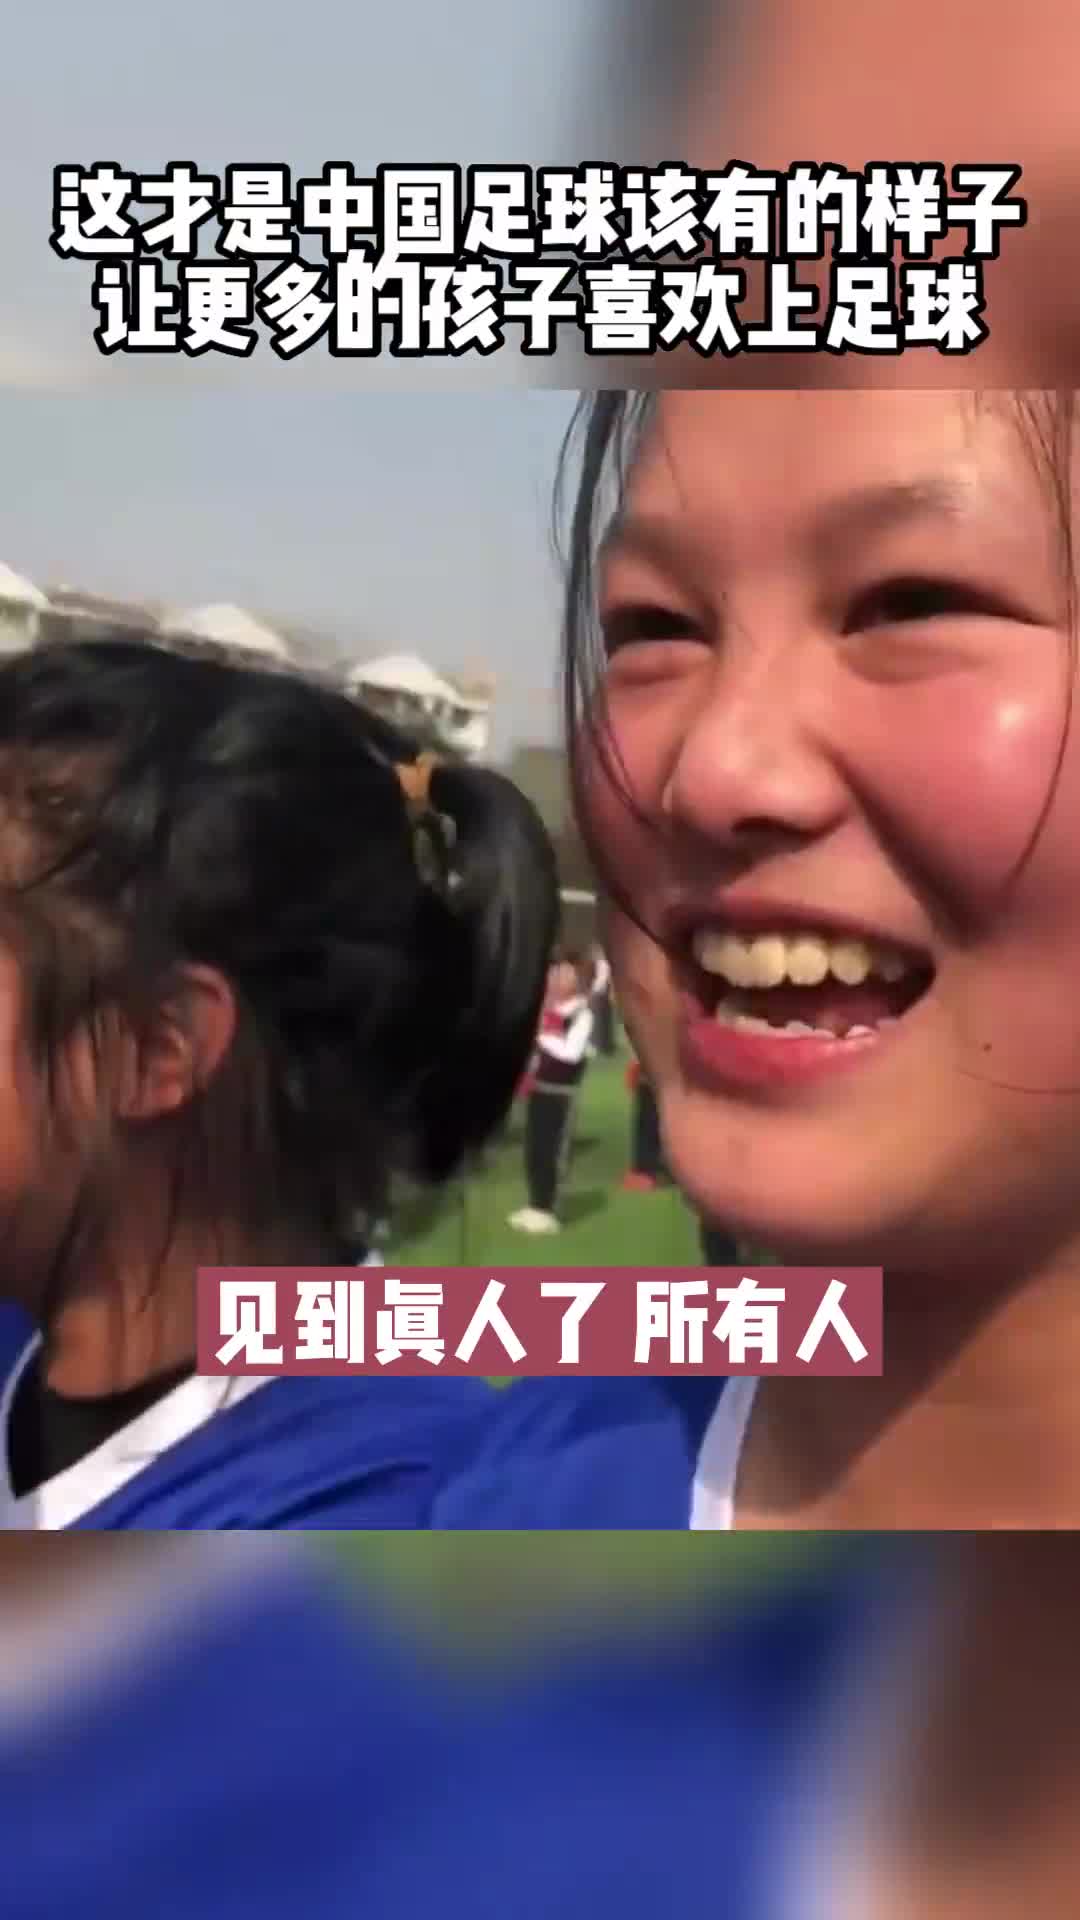 中国女足球员走进校园